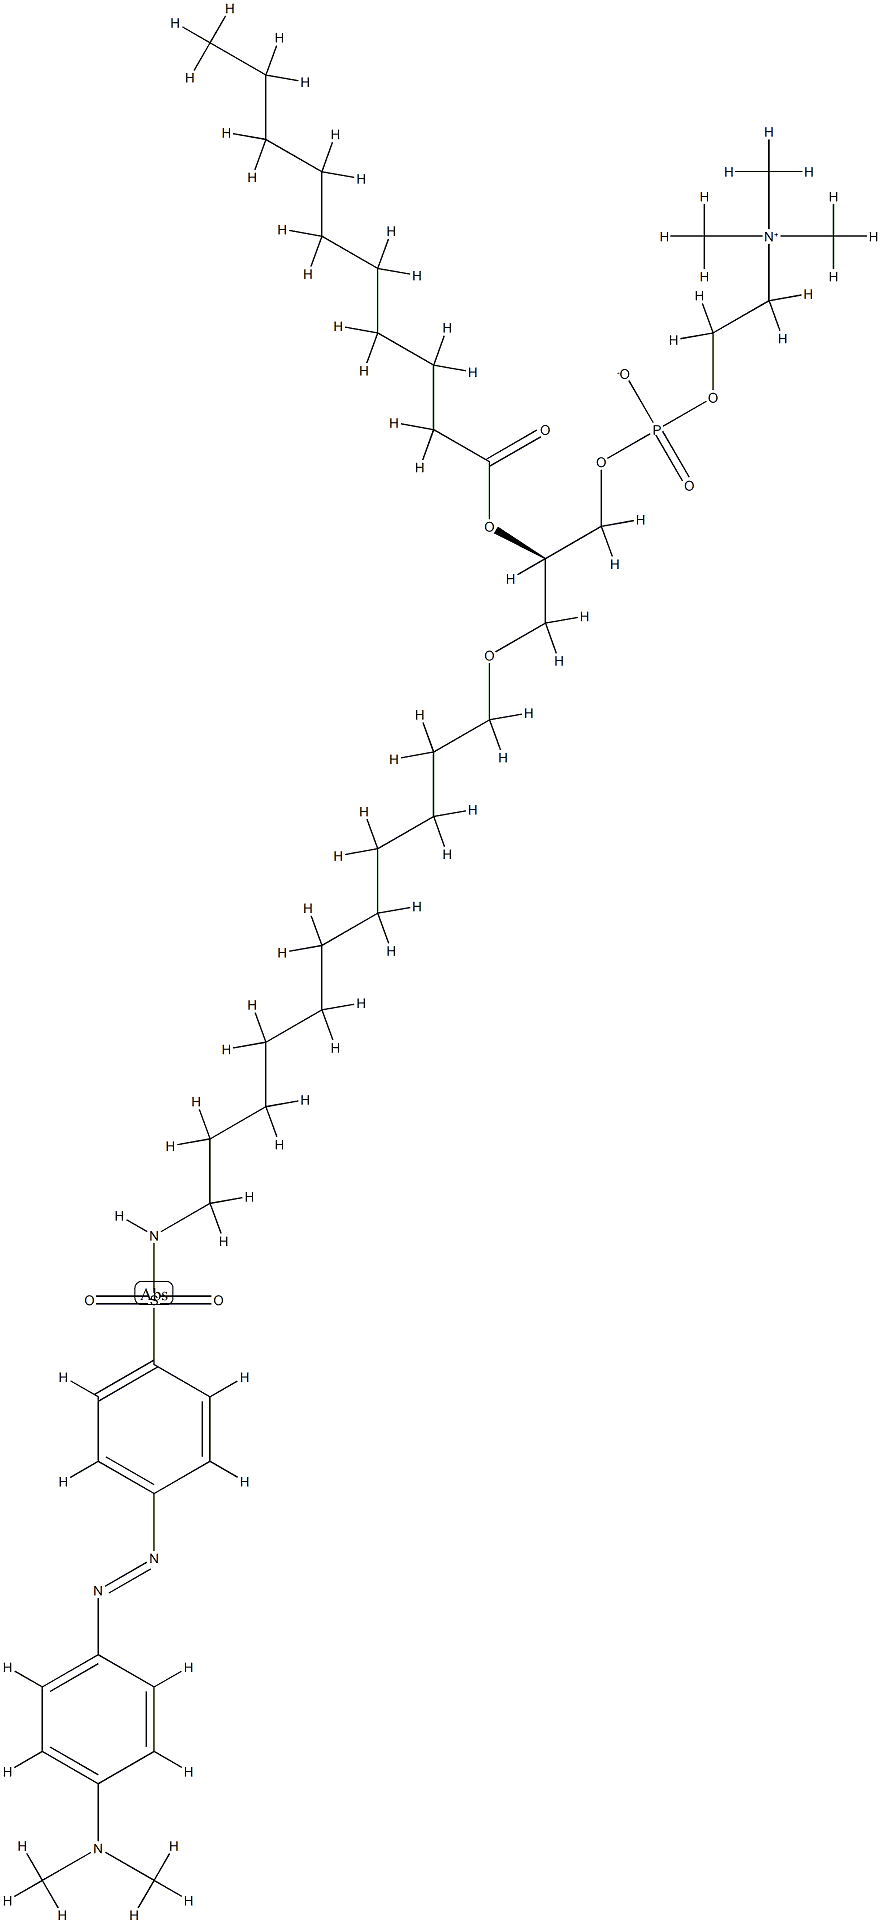 1-O-(N-dabsyl-11-amino-1-undecyl)-2-O-decanoylphosphatidylcholine|